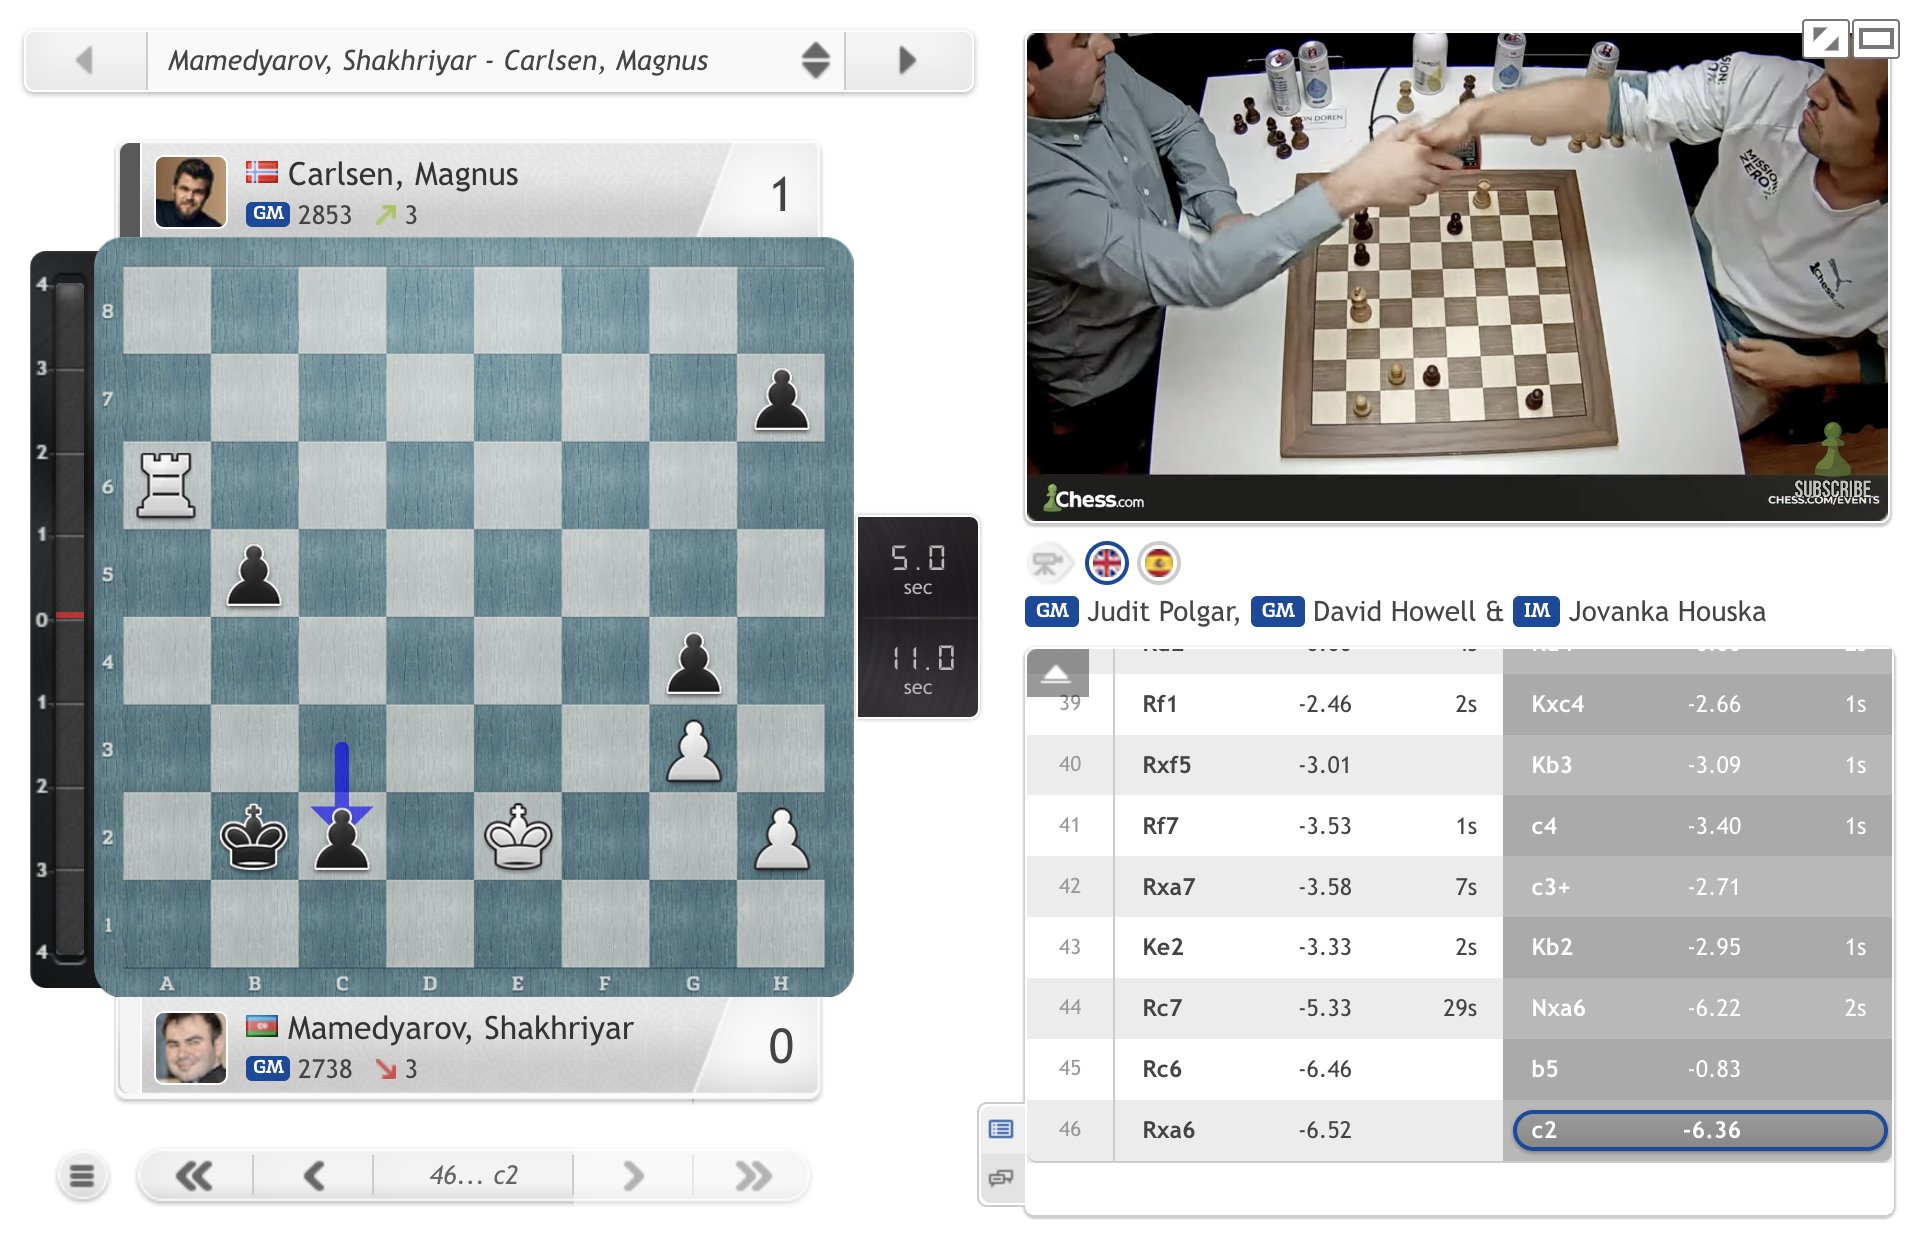 chess24 - Magnus wins